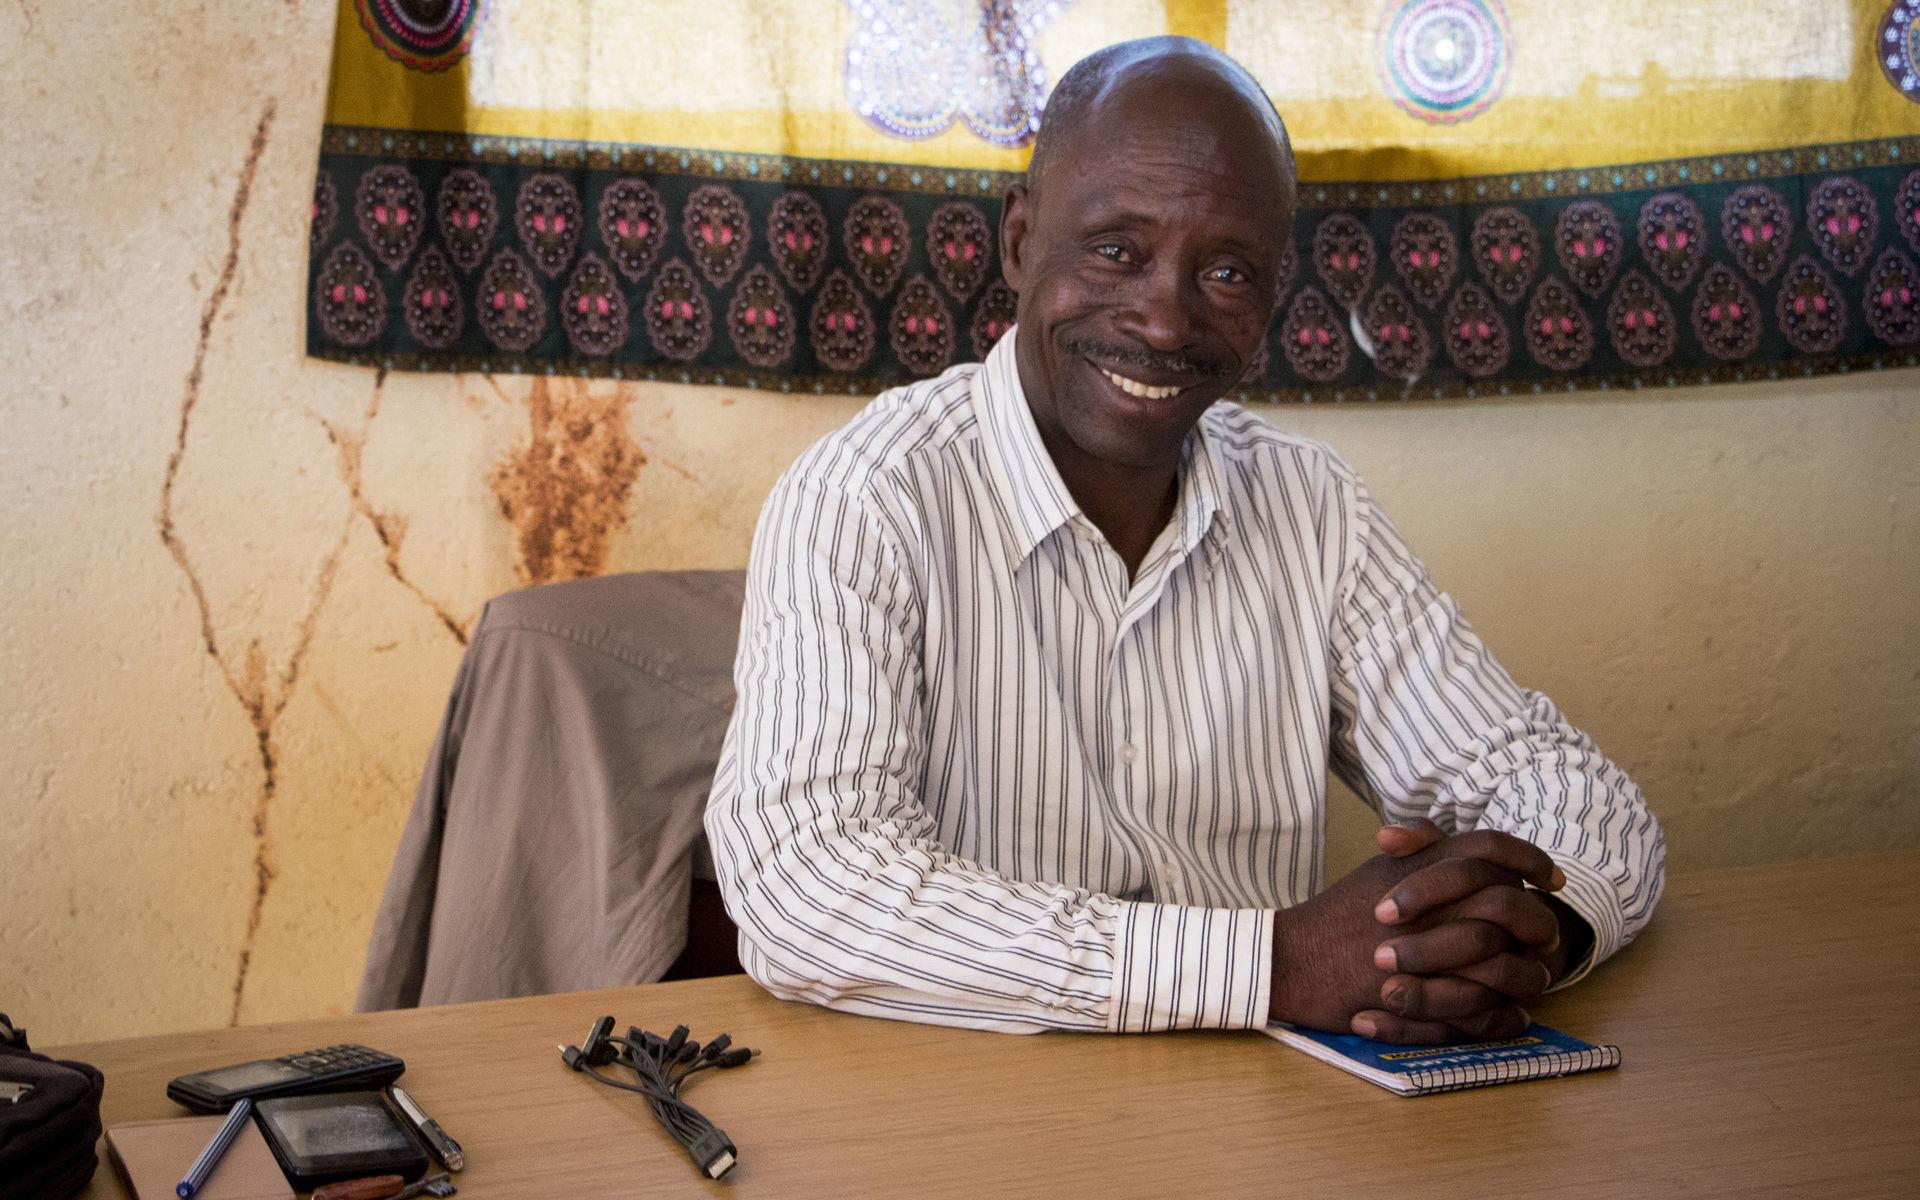 Lawrence Mwanangombe är samordnare för den arbetsgrupp som lokalbefolkningen i Kalumbila skapat för att driva sina krav gentemot gruvan. ”Det verkar som att staten stödjer investeraren mycket mer än det lokala samhällen och vi är skyfflade i händerna på företaget”, säger han.